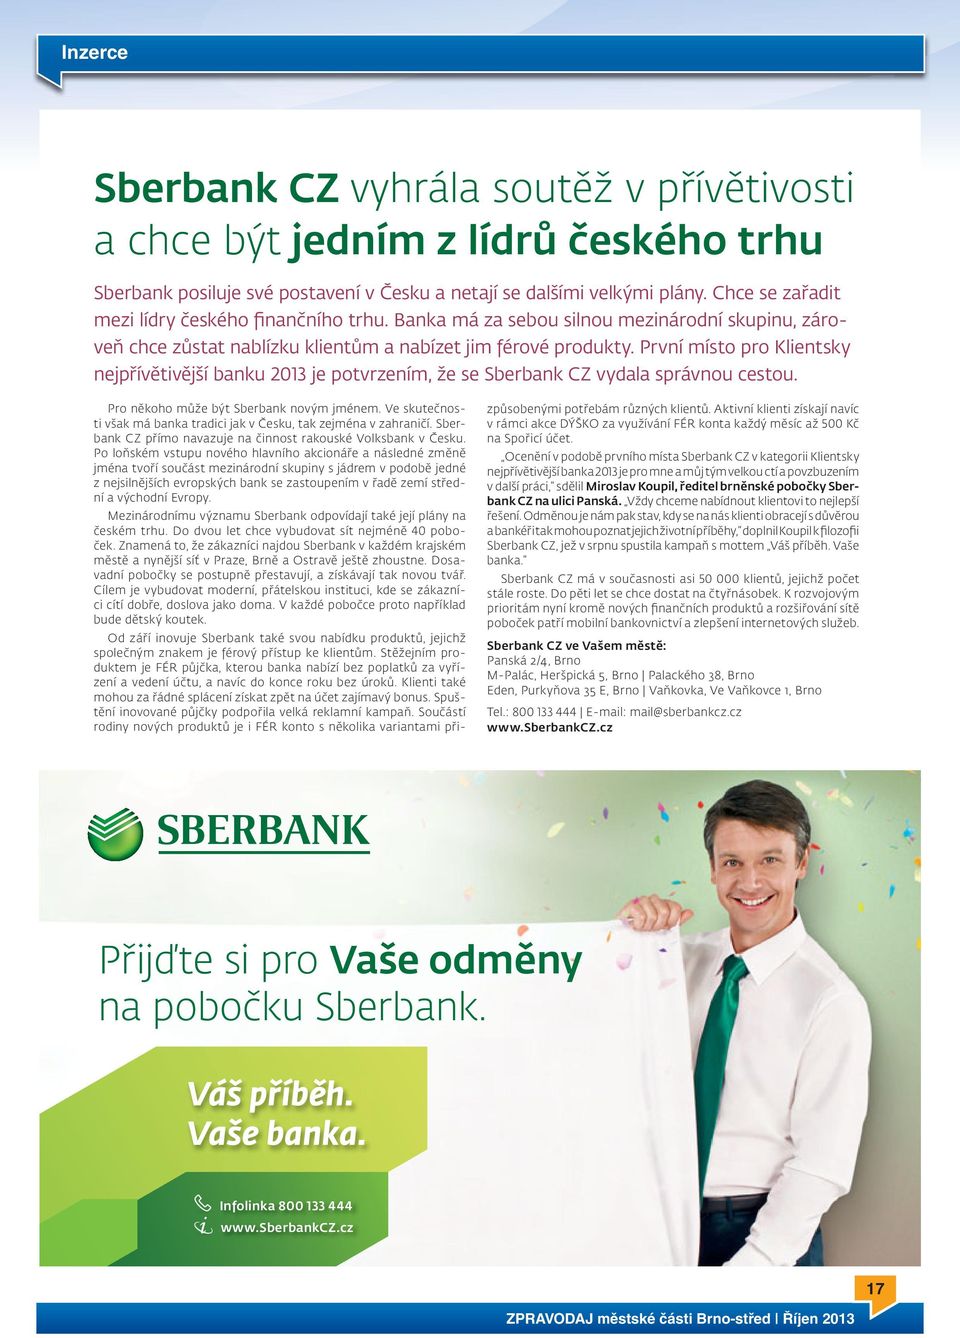 První místo pro Klientsky nejpřívětivější banku 2013 je potvrzením, že se Sberbank CZ vydala správnou cestou. Pro někoho může být Sberbank novým jménem.